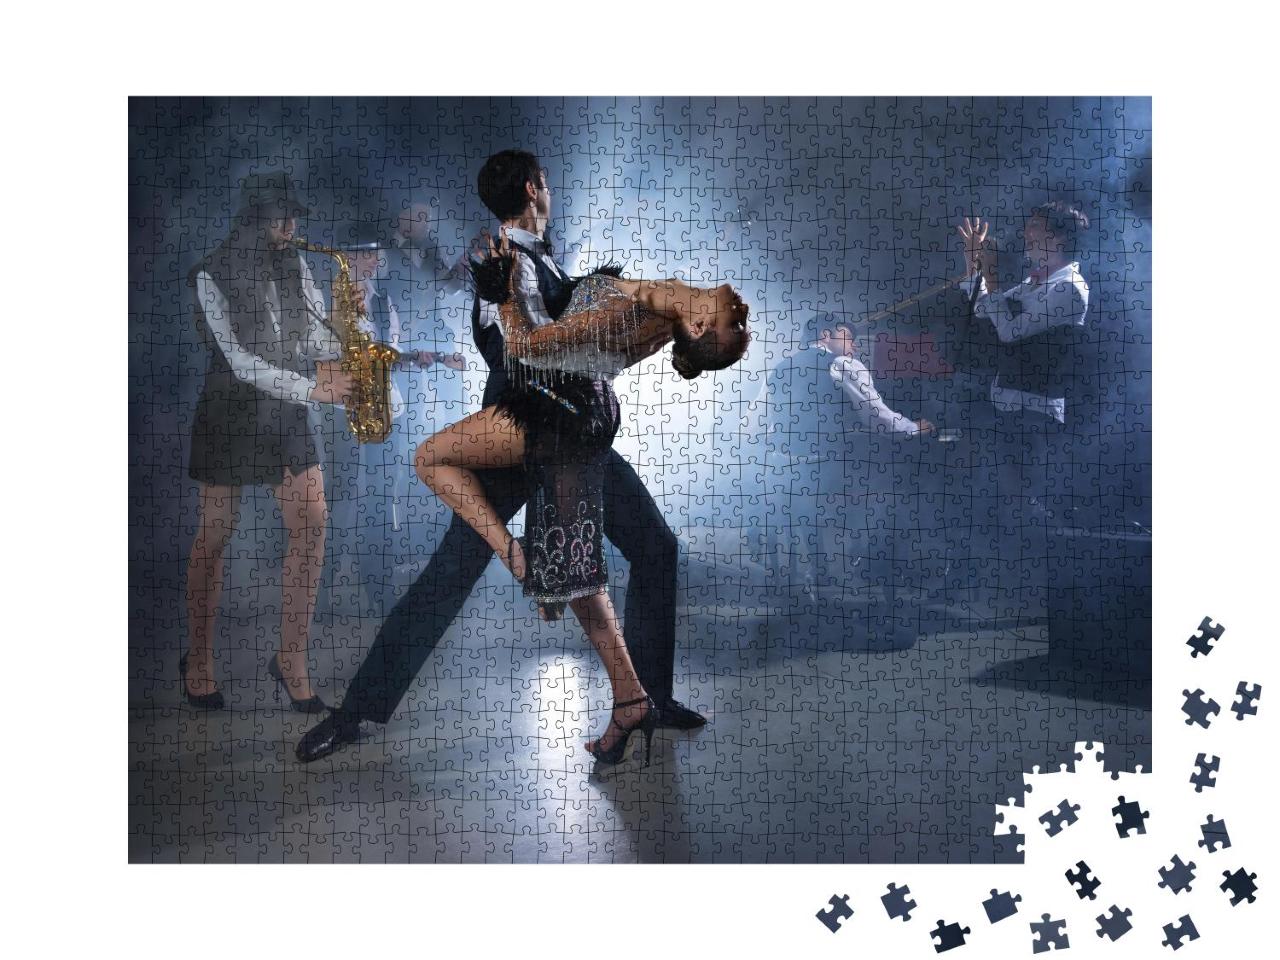 Puzzle 1000 Teile „Feuriger Tanz zu Live-Musik“